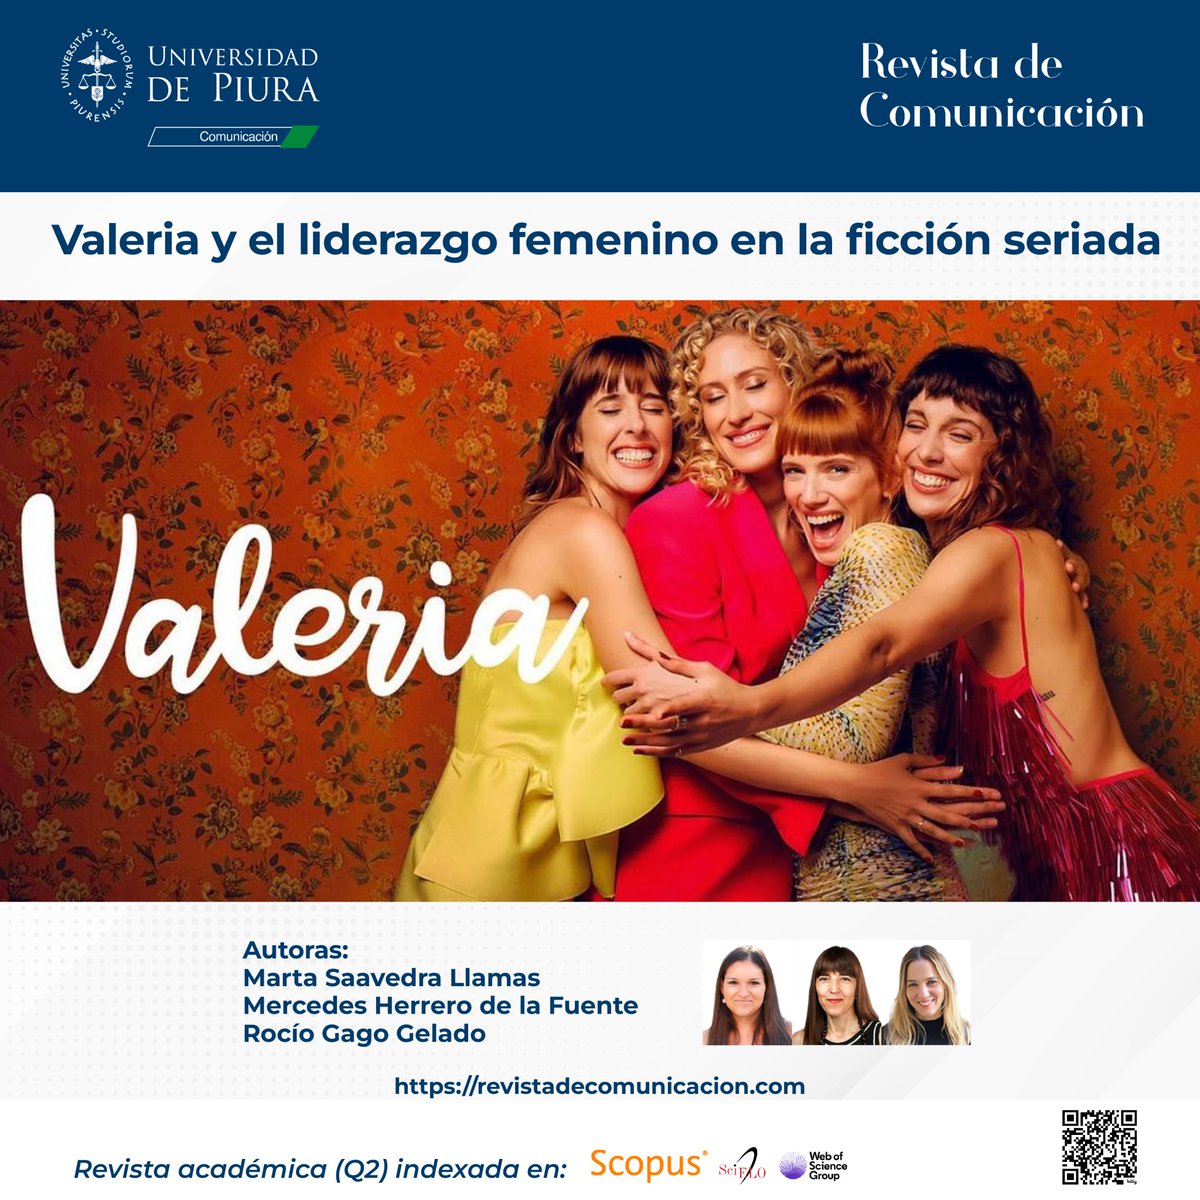 🙋🏻Hoy, 8 de marzo, se conmemora el Día Internacional de la Mujer. La Revista de Comunicación te invita a leer un artículo sobre el fortalecimiento del liderazgo femenino en la producción audiovisual.➡bitly.ws/3ff2U #DíadelaMujer #8M #8deMarzo #mujer #Valeria #Liderazgo